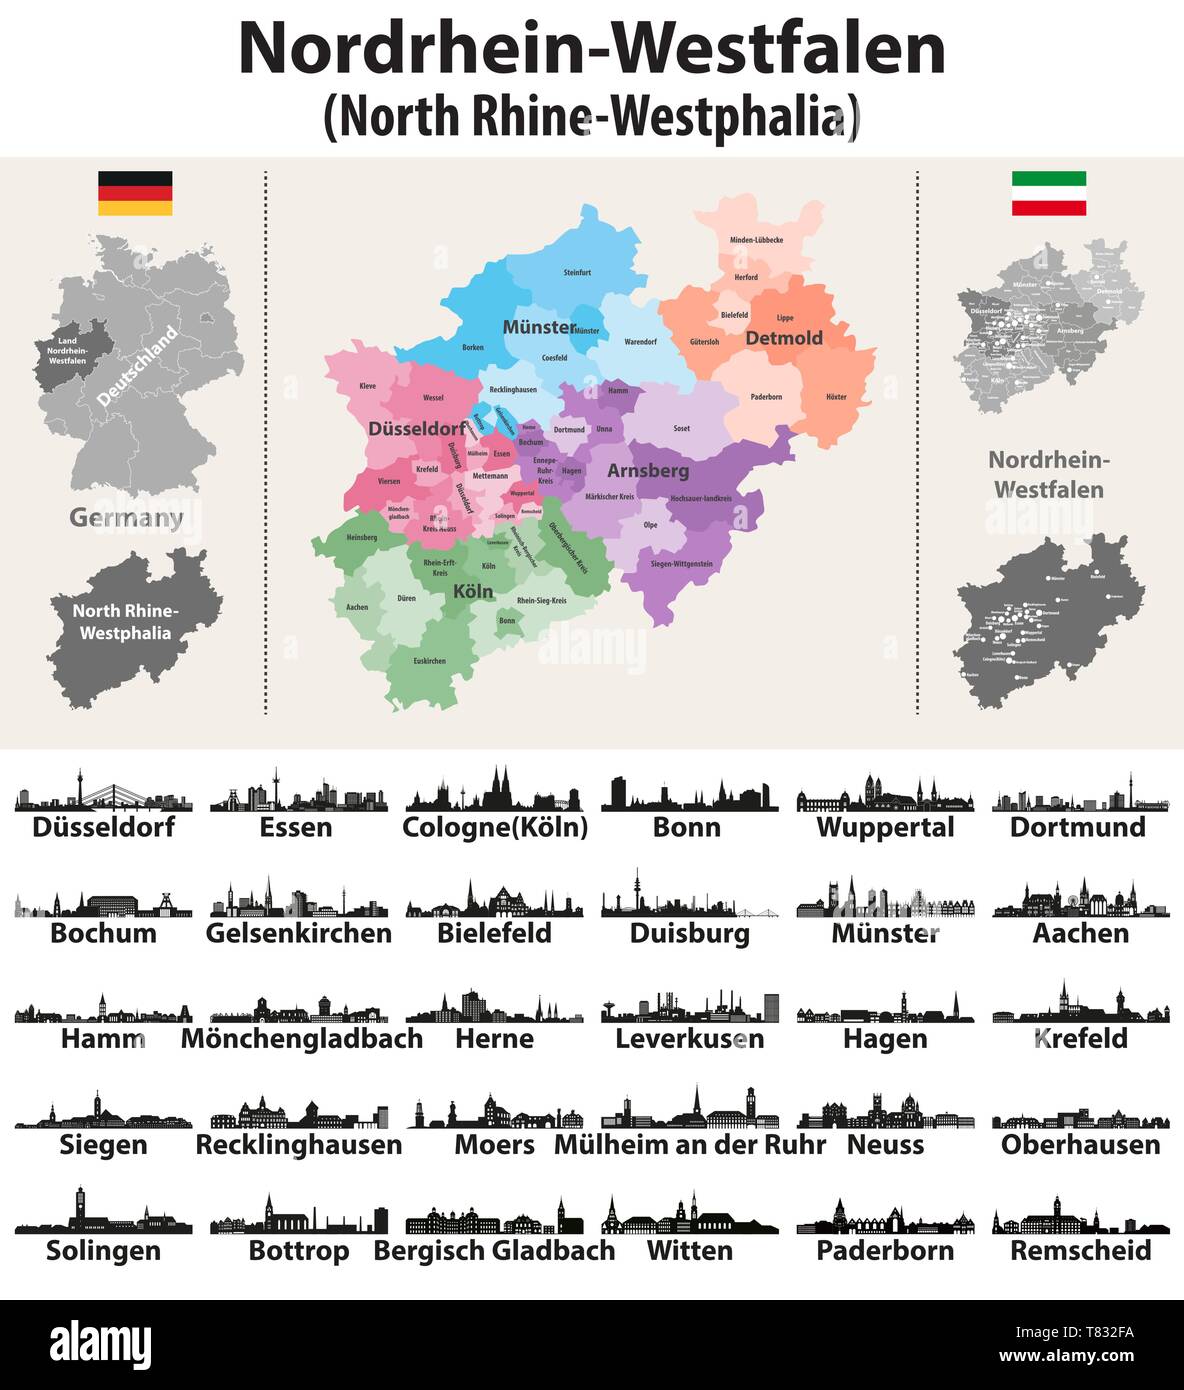 Deutschland Bundesland Nordrhein Westfalen Vektor Karte Mit Den Grossten Stadten Skylines Stock Vektorgrafik Alamy